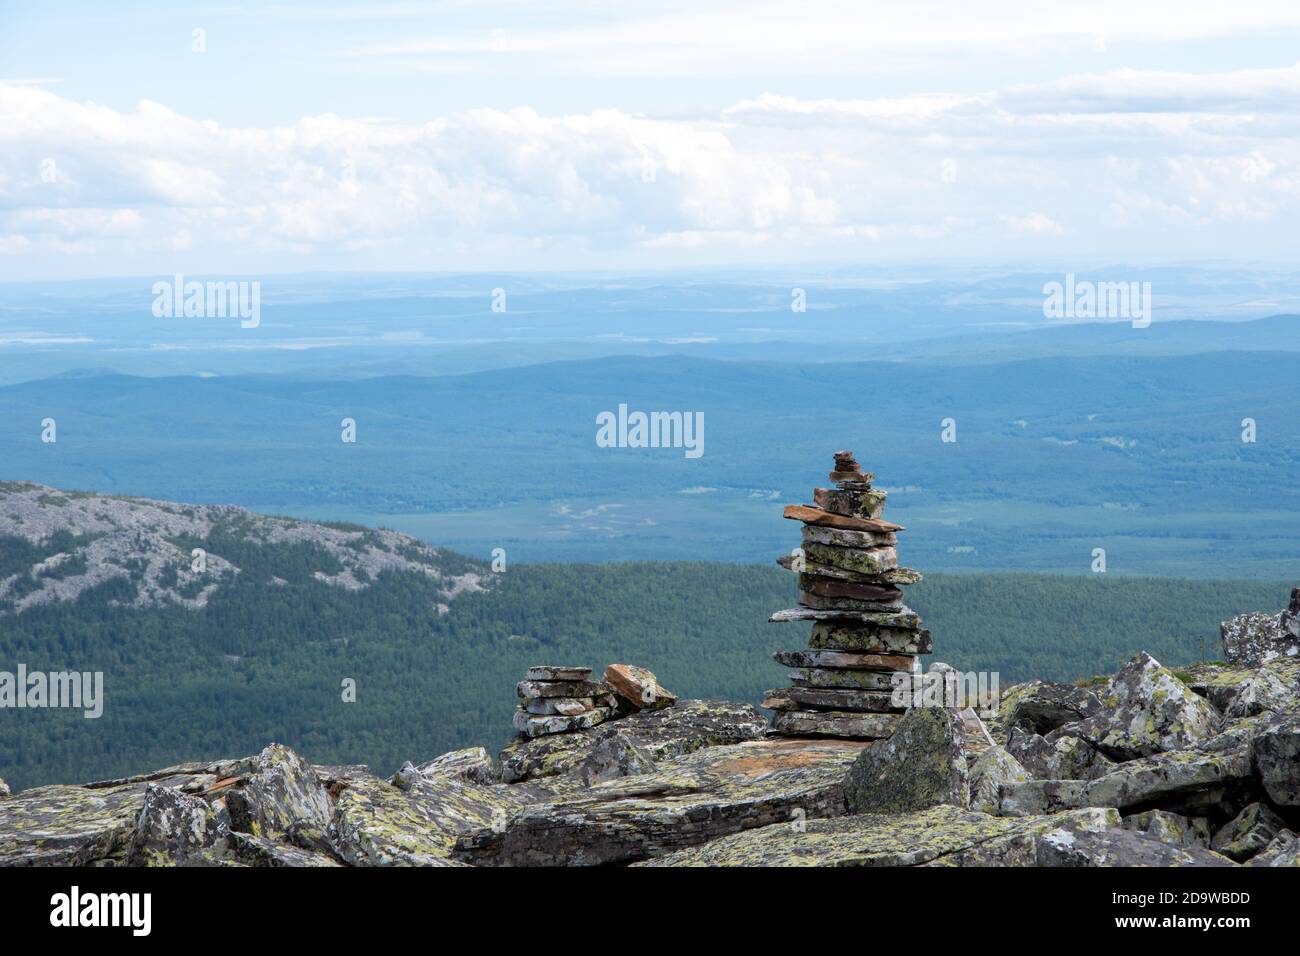 Pierres pyramidales empilées qui marquent un sentier de montagne, un point de repère pour la randonnée, sur la toile de fond des montagnes de l'Oural, Russie. Banque D'Images